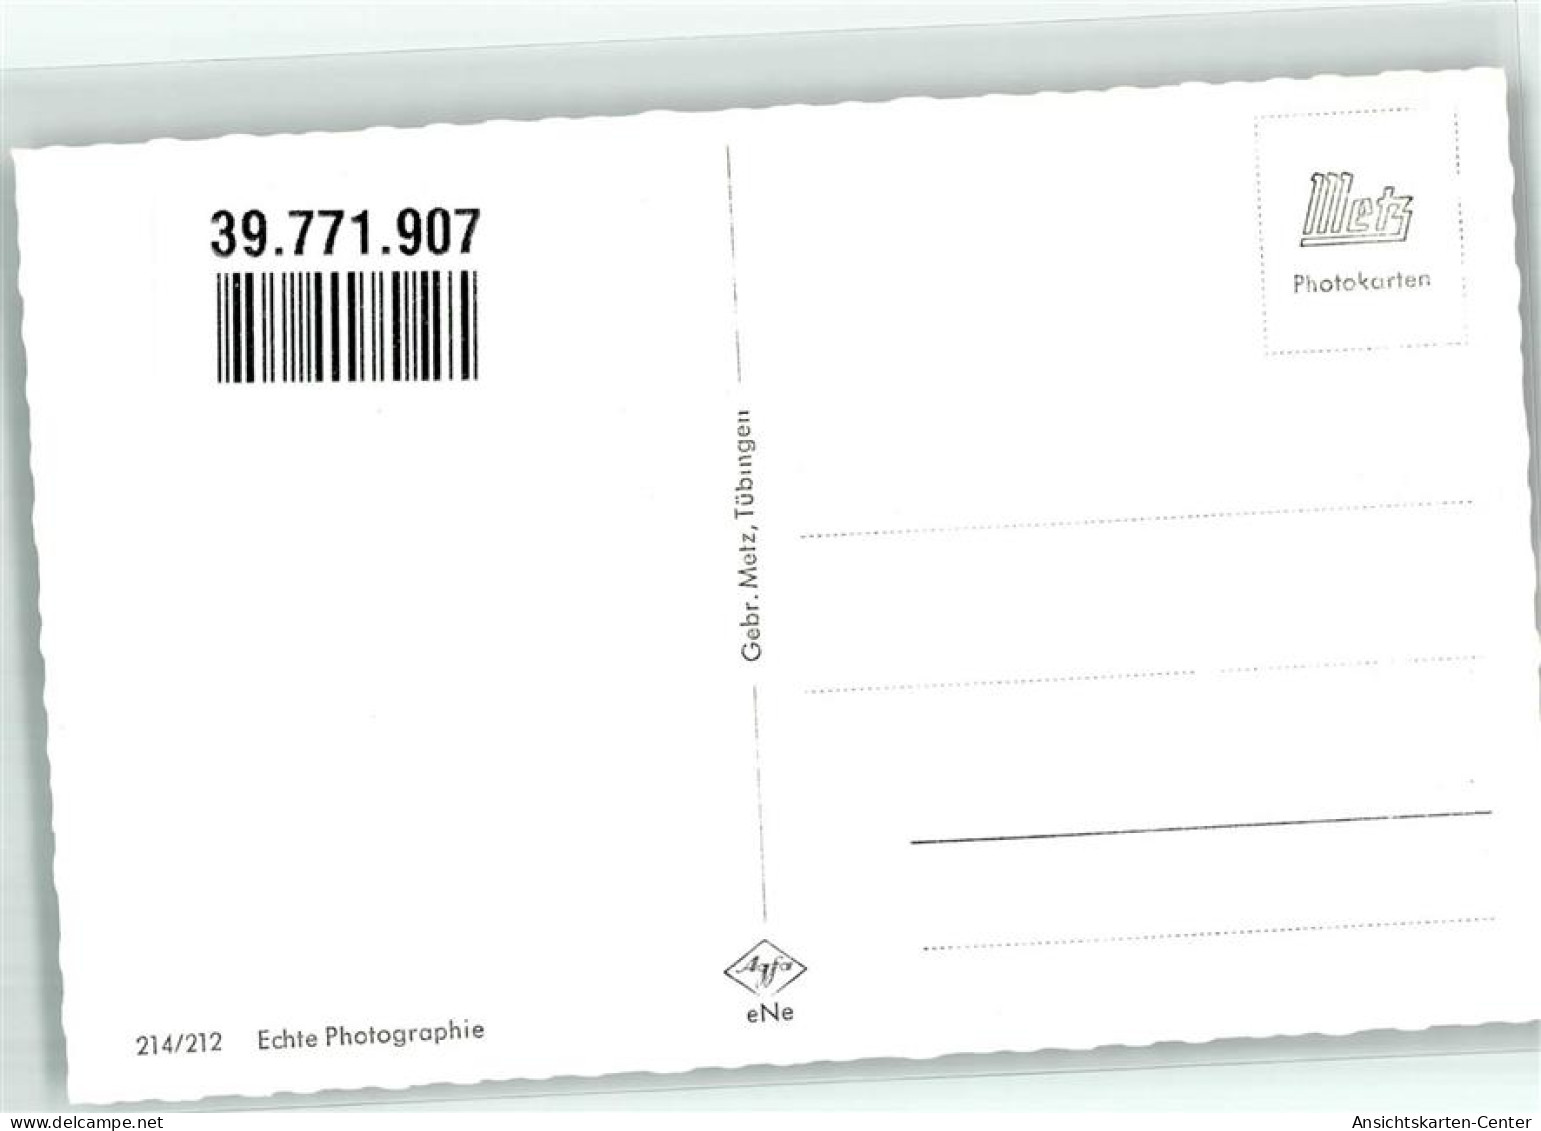 39771907 - Feldberg , Schwarzwald - Feldberg